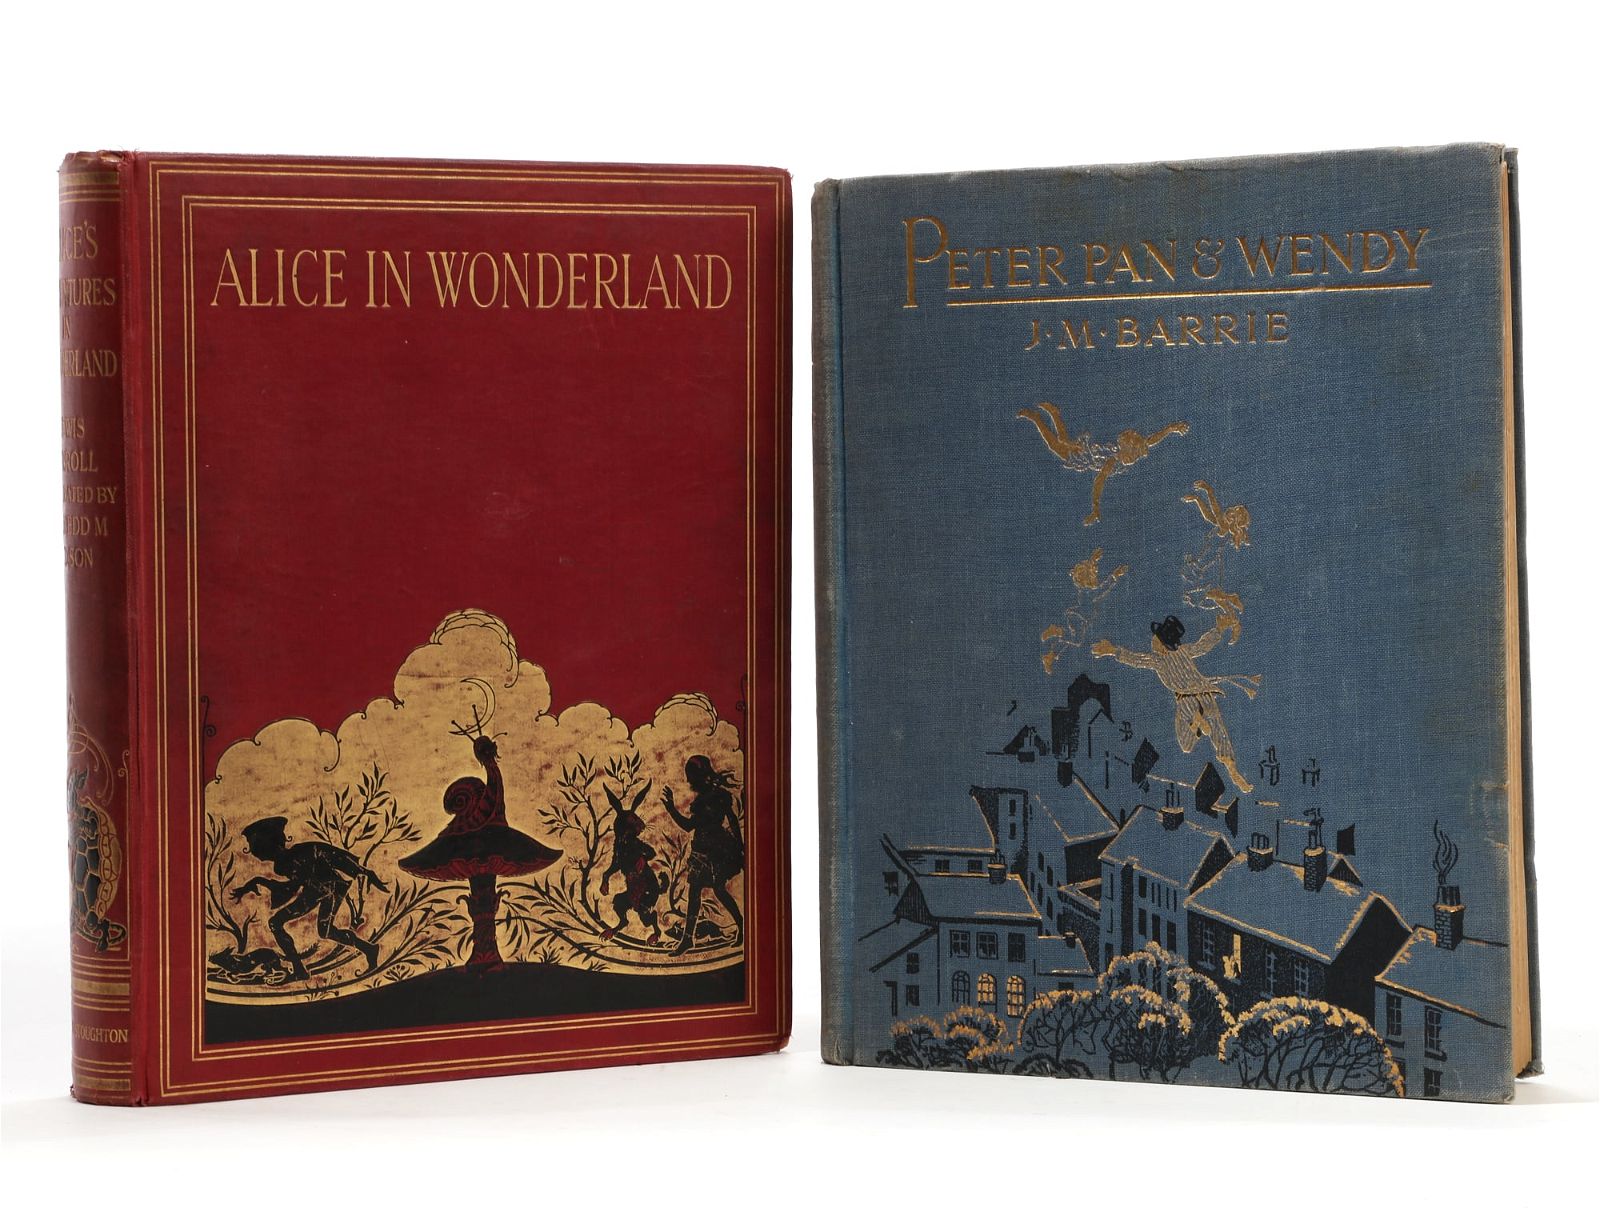 ALICE IN WONDERLAND & PETER PAN & WENDYAlice